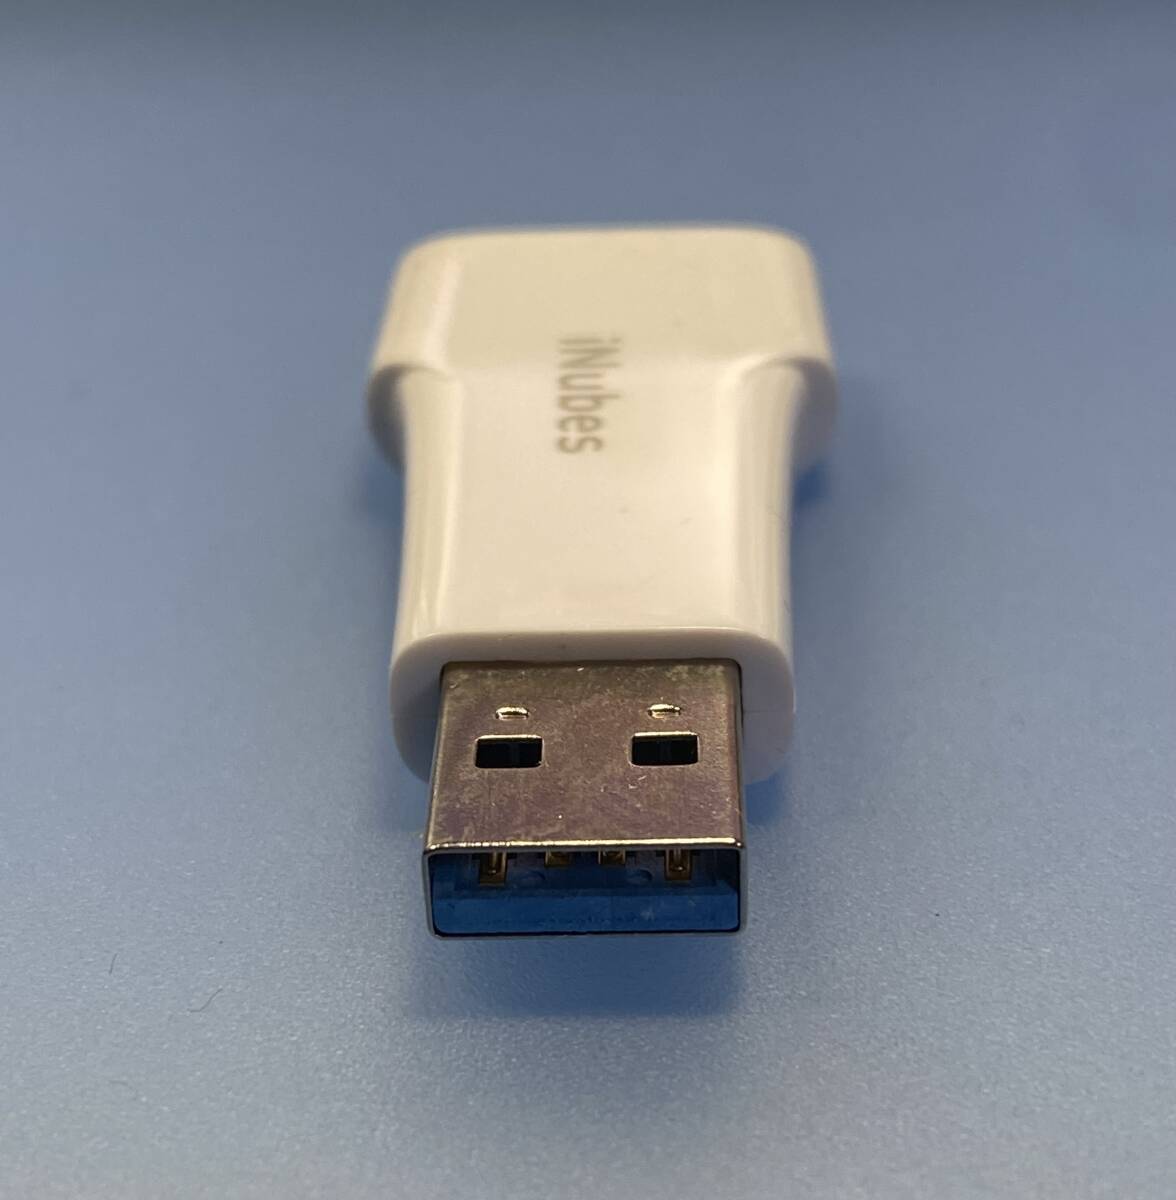 USB32GBメモリ USB3.0/LIGHTNINGコネクタ仕様 3本セット 定形外郵便送料無料の画像4